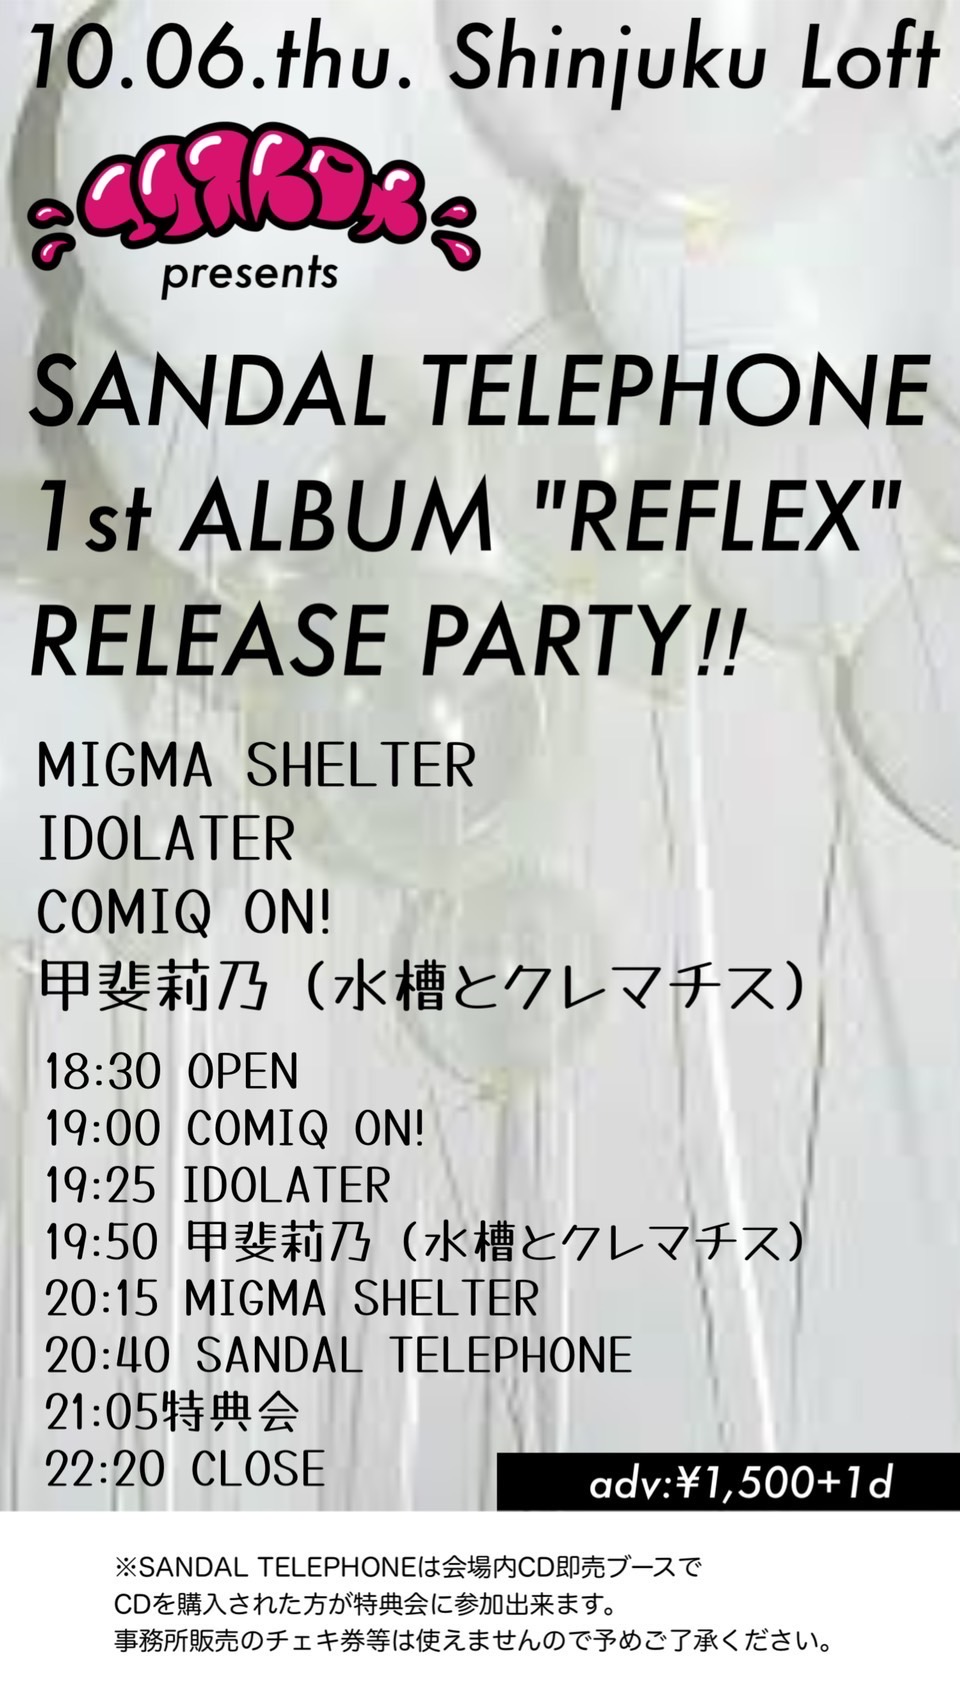 エクストロメpresents SANDAL TELEPHONE 1st ALBUM "REFLEX" RELEASE PARTY!!